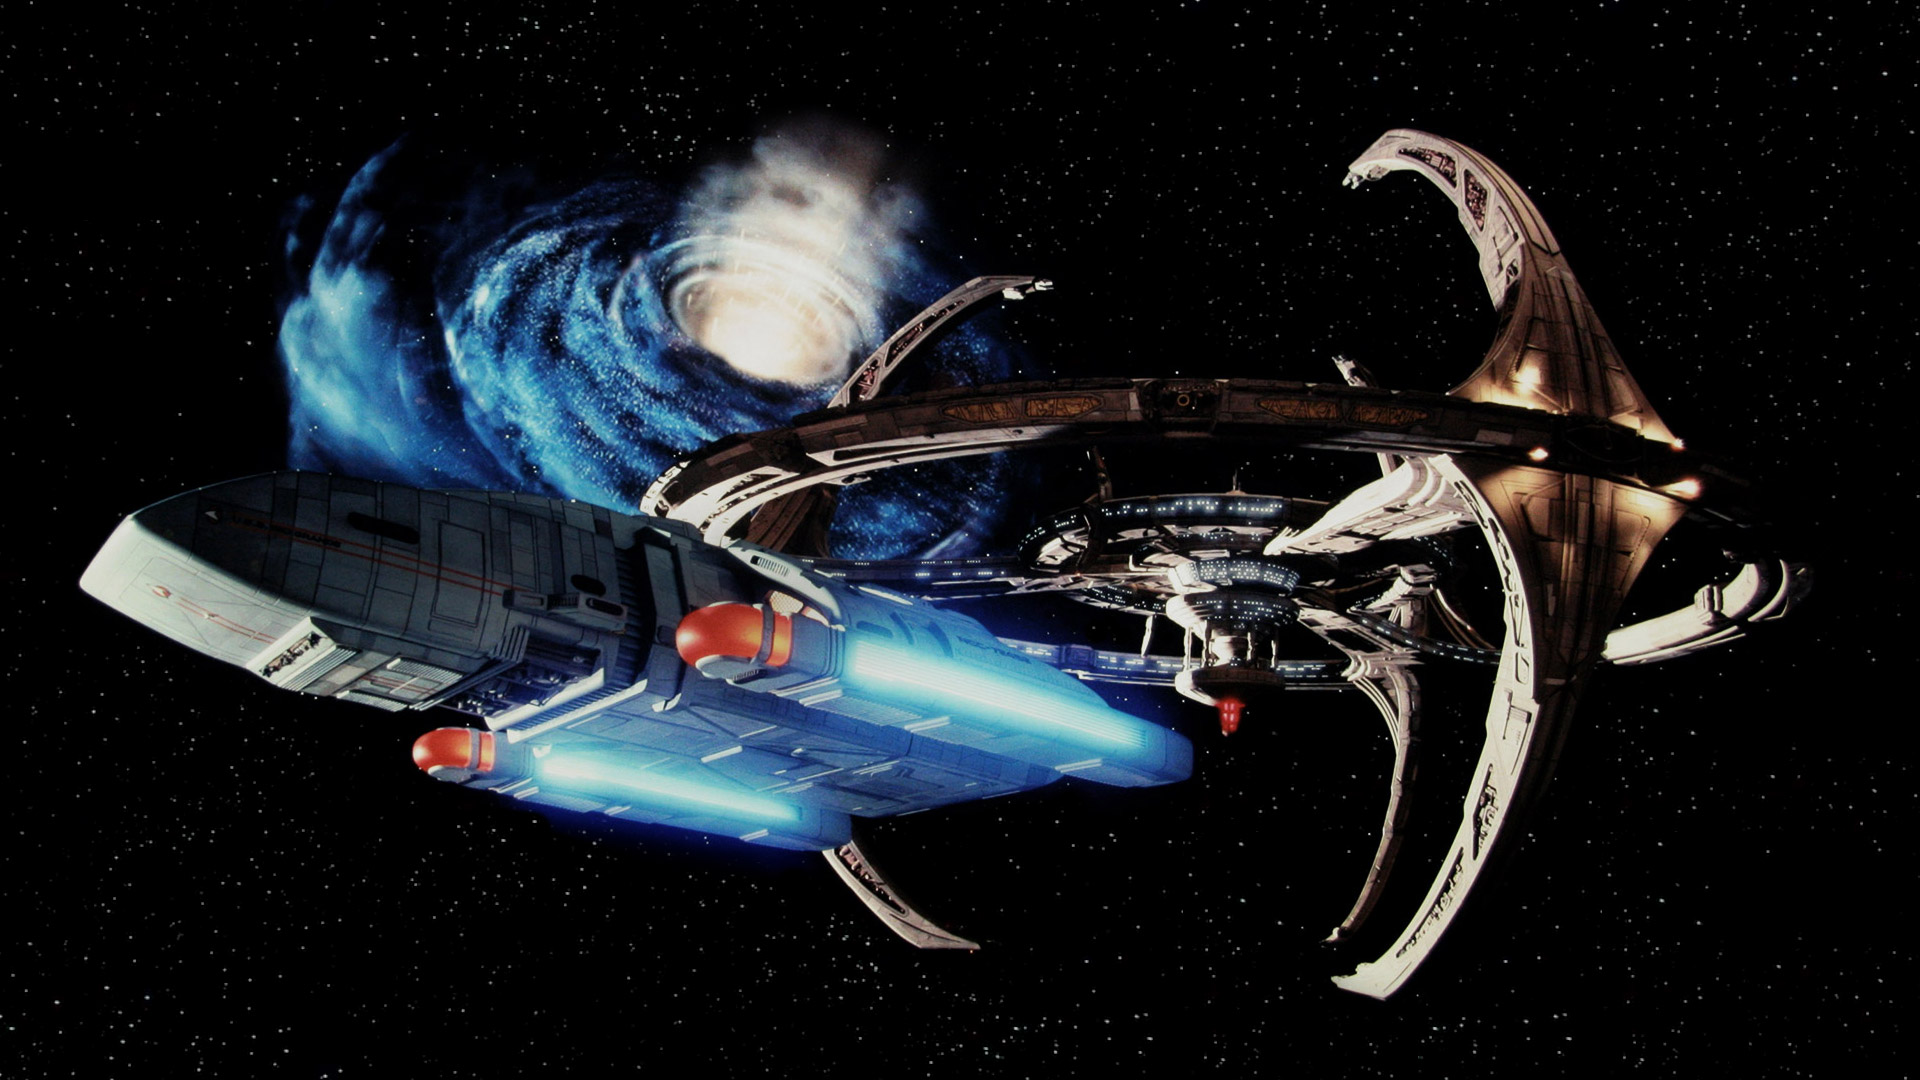 Hình nền Deep Space Nine Crossroads of Time HD sẽ giúp bạn khám phá các khu vực phức tạp của trung tâm trái đất trong vũ trụ Star Trek. Hãy chia sẻ bức tranh nền độc đáo này để khám phá cốt truyện hấp dẫn của trò chơi và gặp gỡ những nhân vật quen thuộc. 